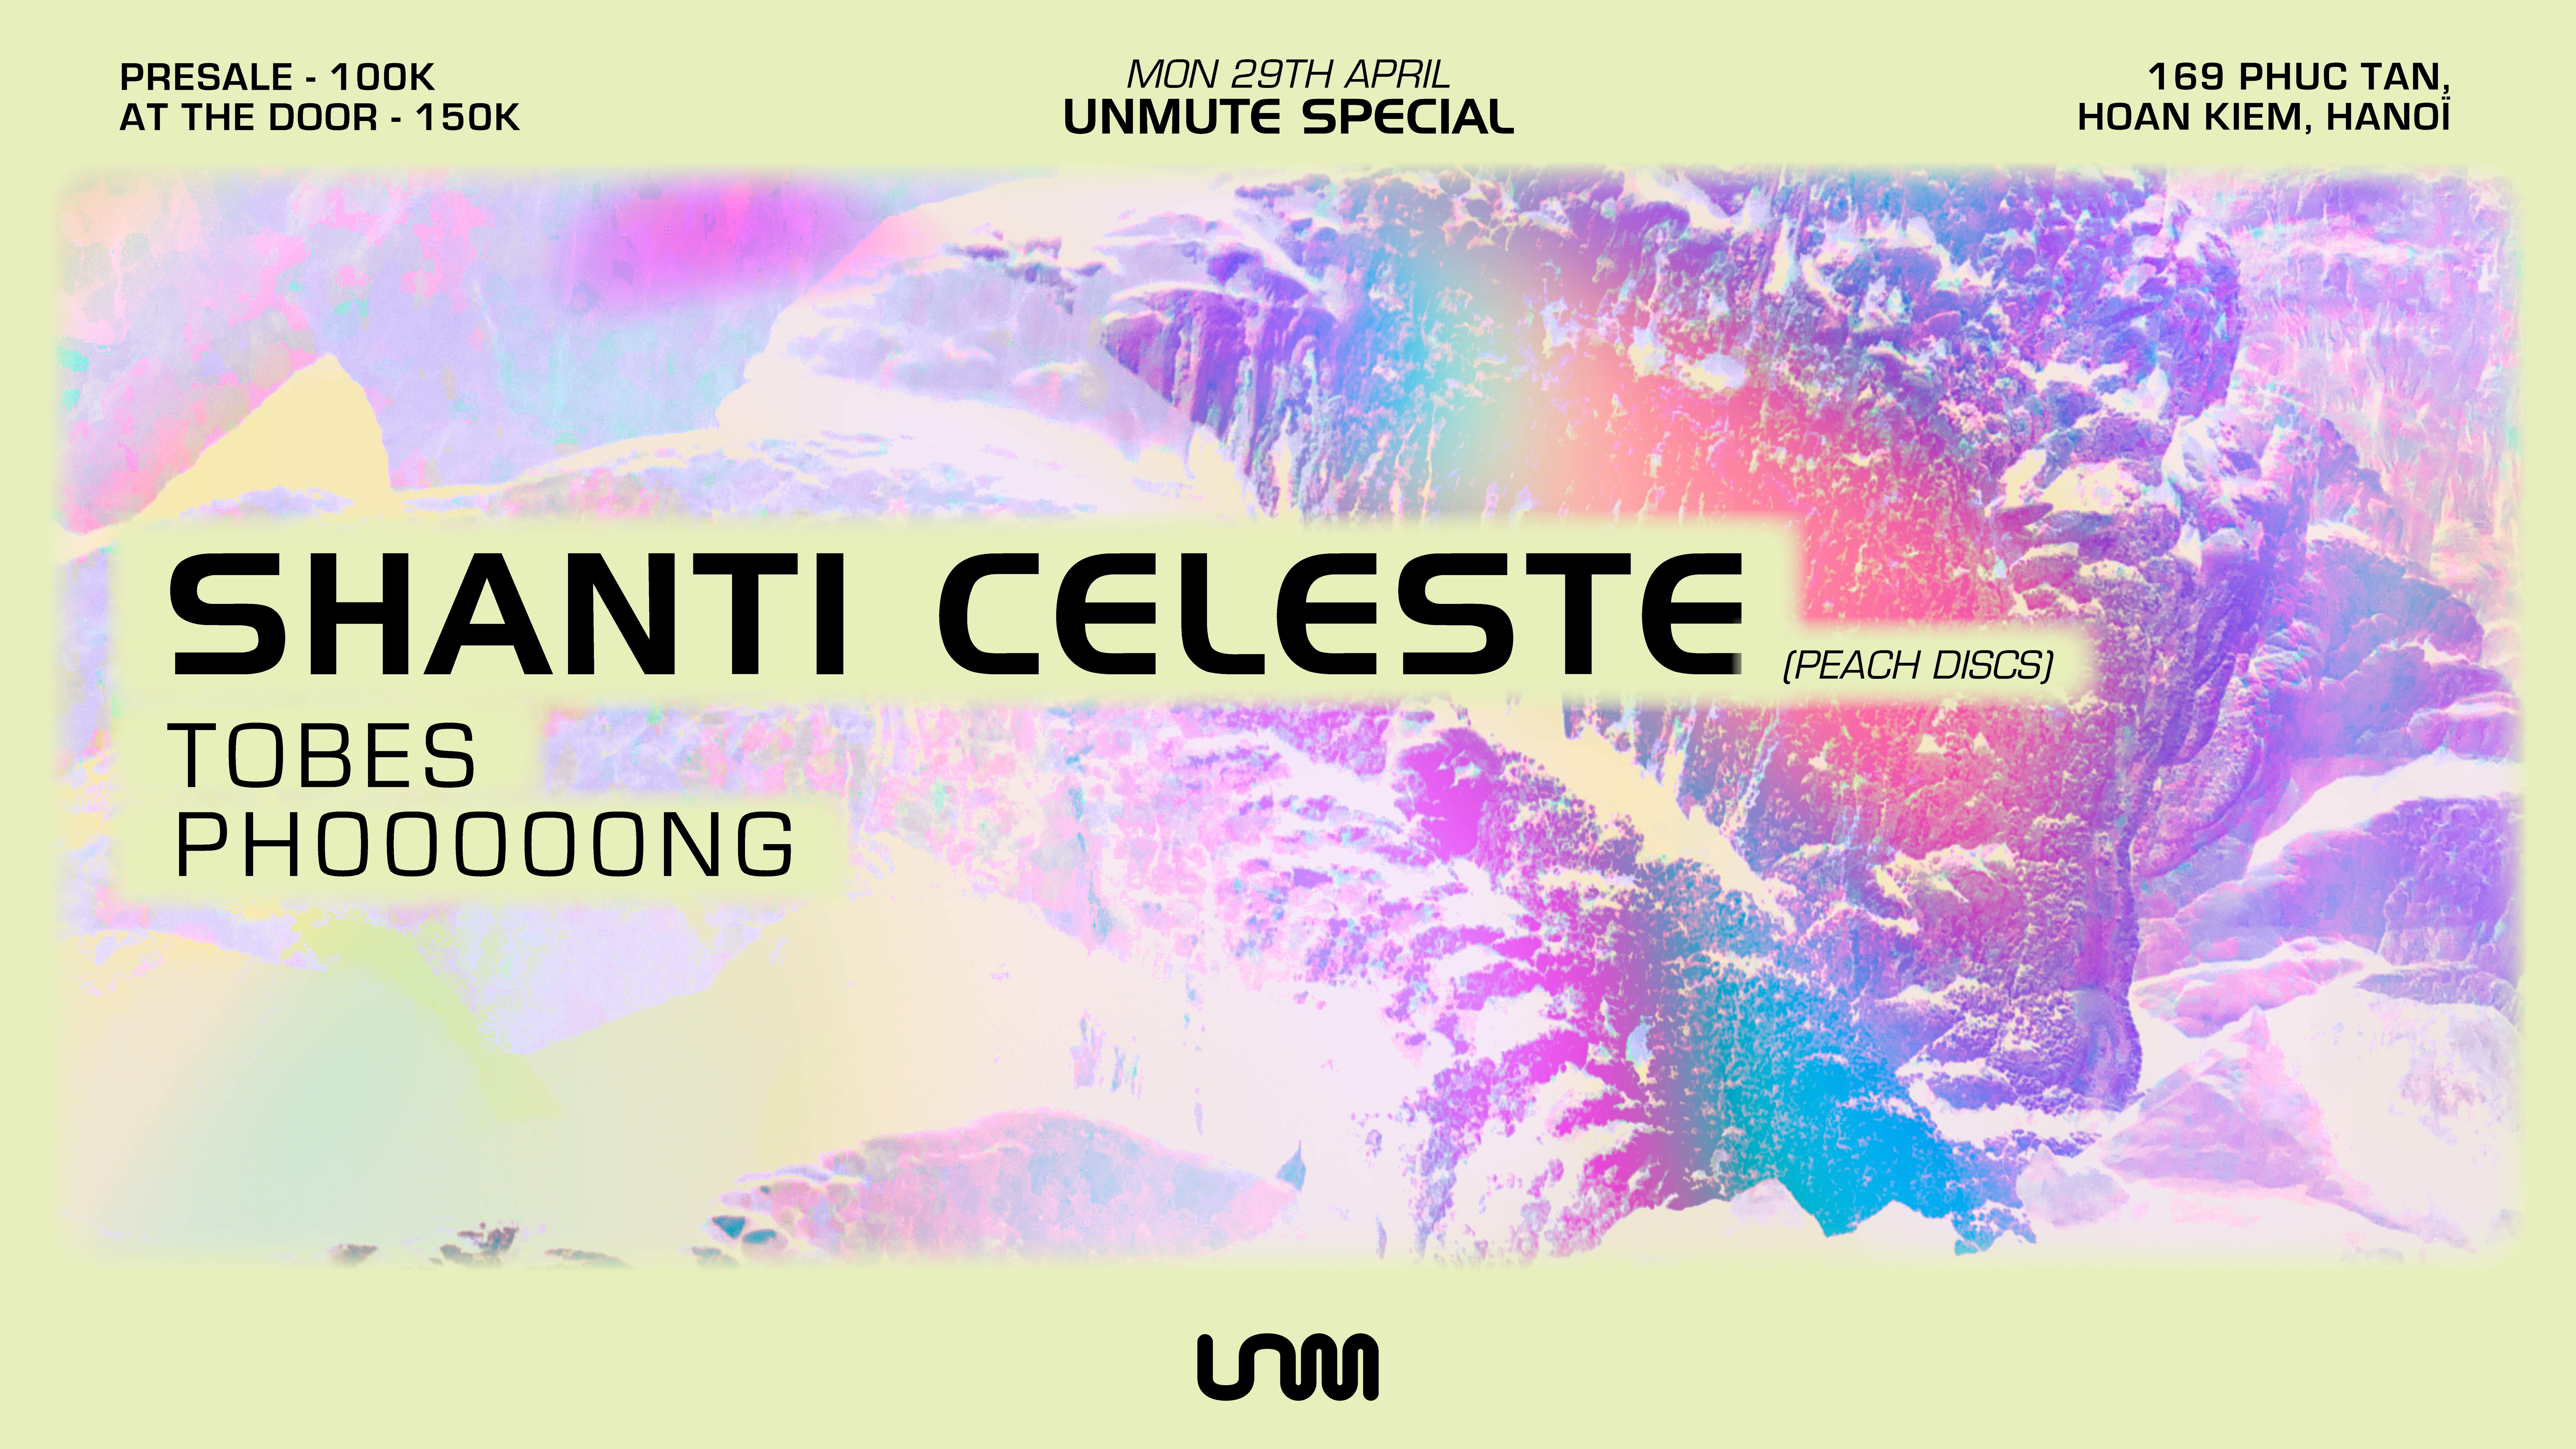 Unmute with Shanti Celeste - フライヤー裏